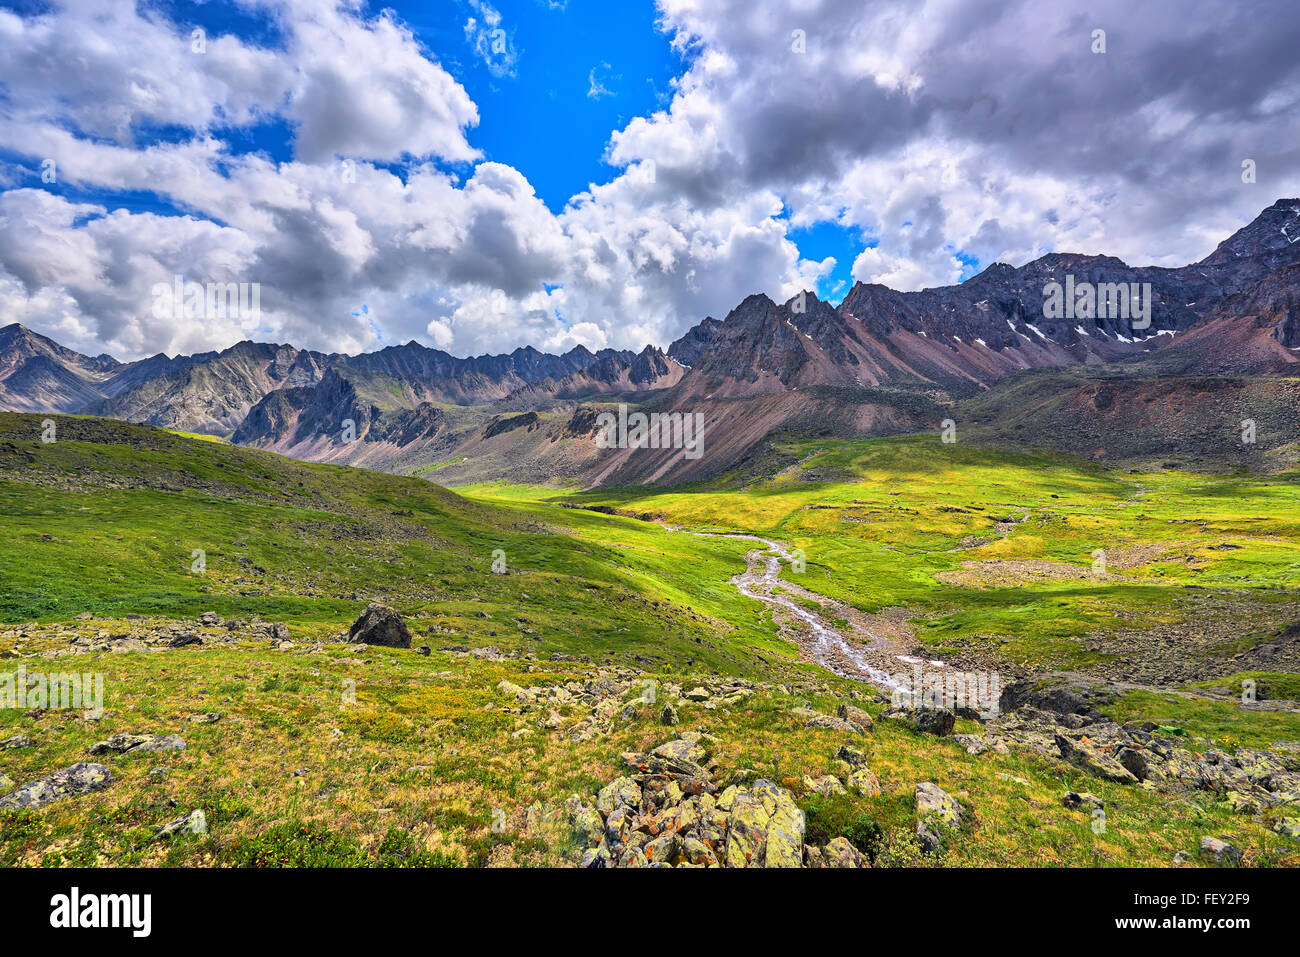 Les prairies alpines dans la vallée de montagne . La Sibérie orientale. Sayans. La Russie Banque D'Images